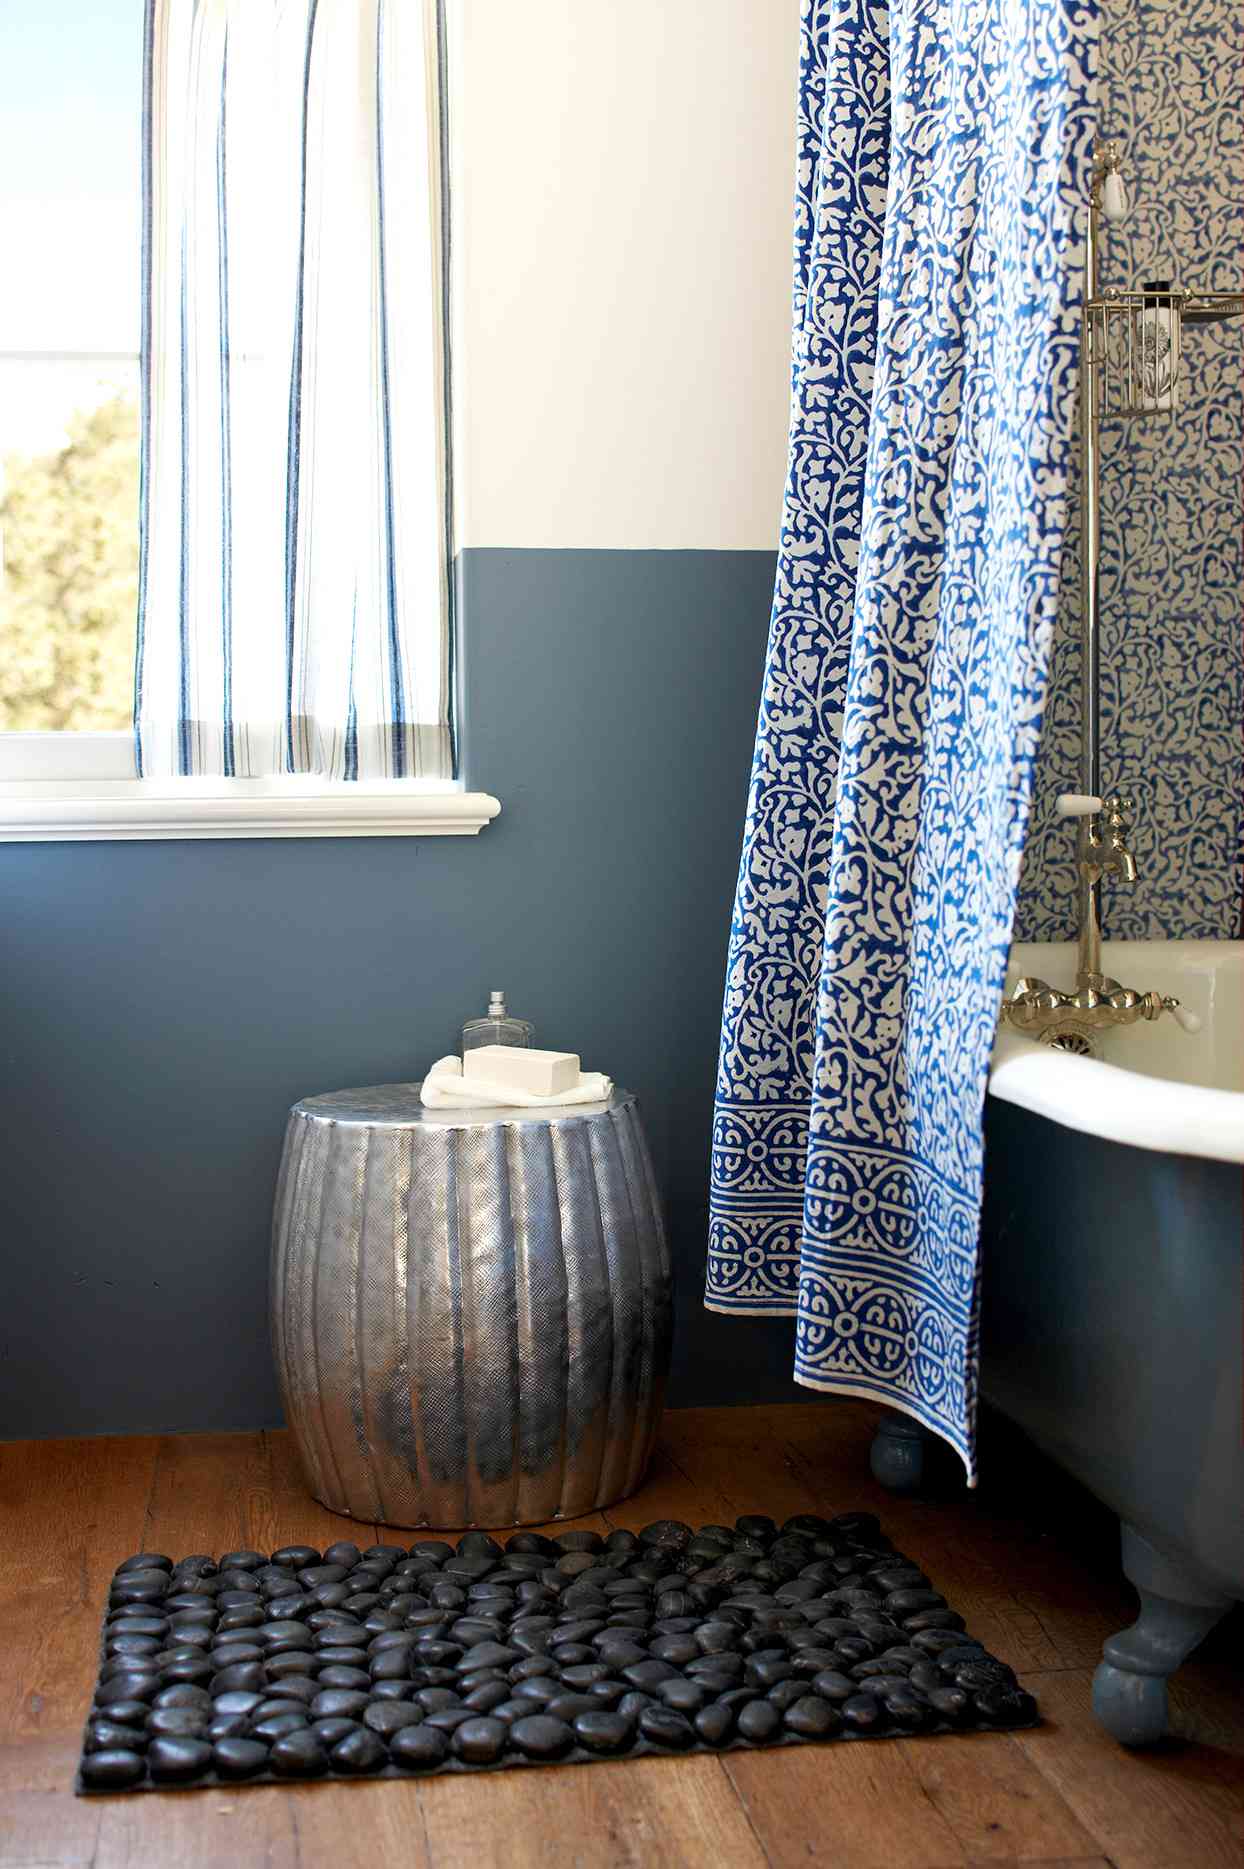 Bathroom with dark blue claw foot tub